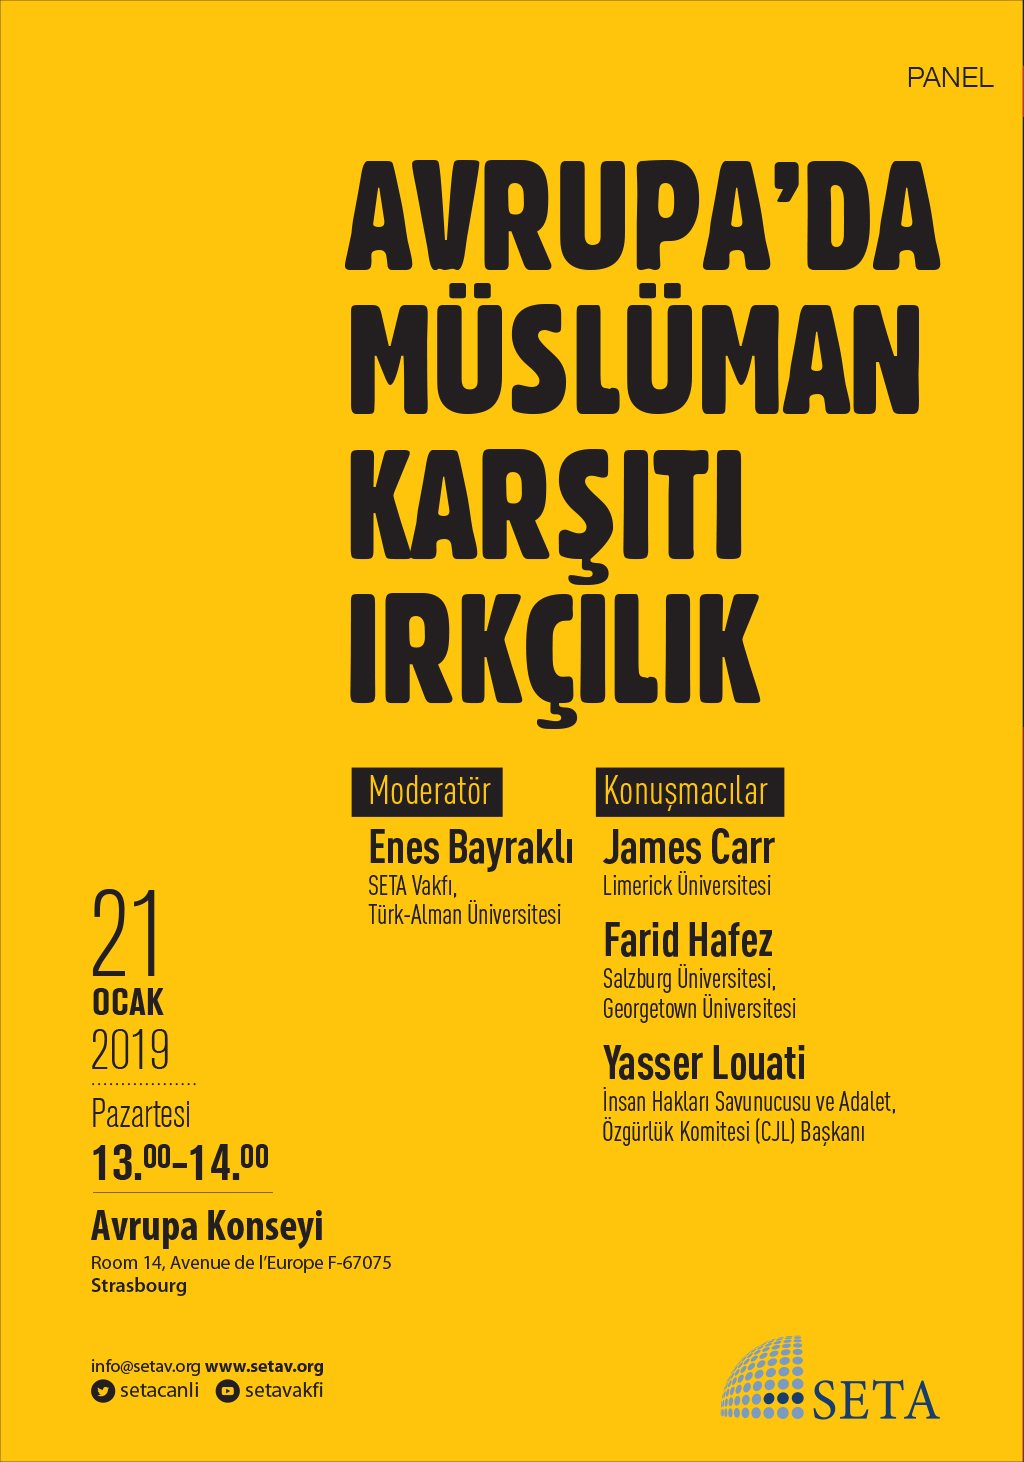 Panel: Avrupa’da Müslüman Karşıtı Irkçılık